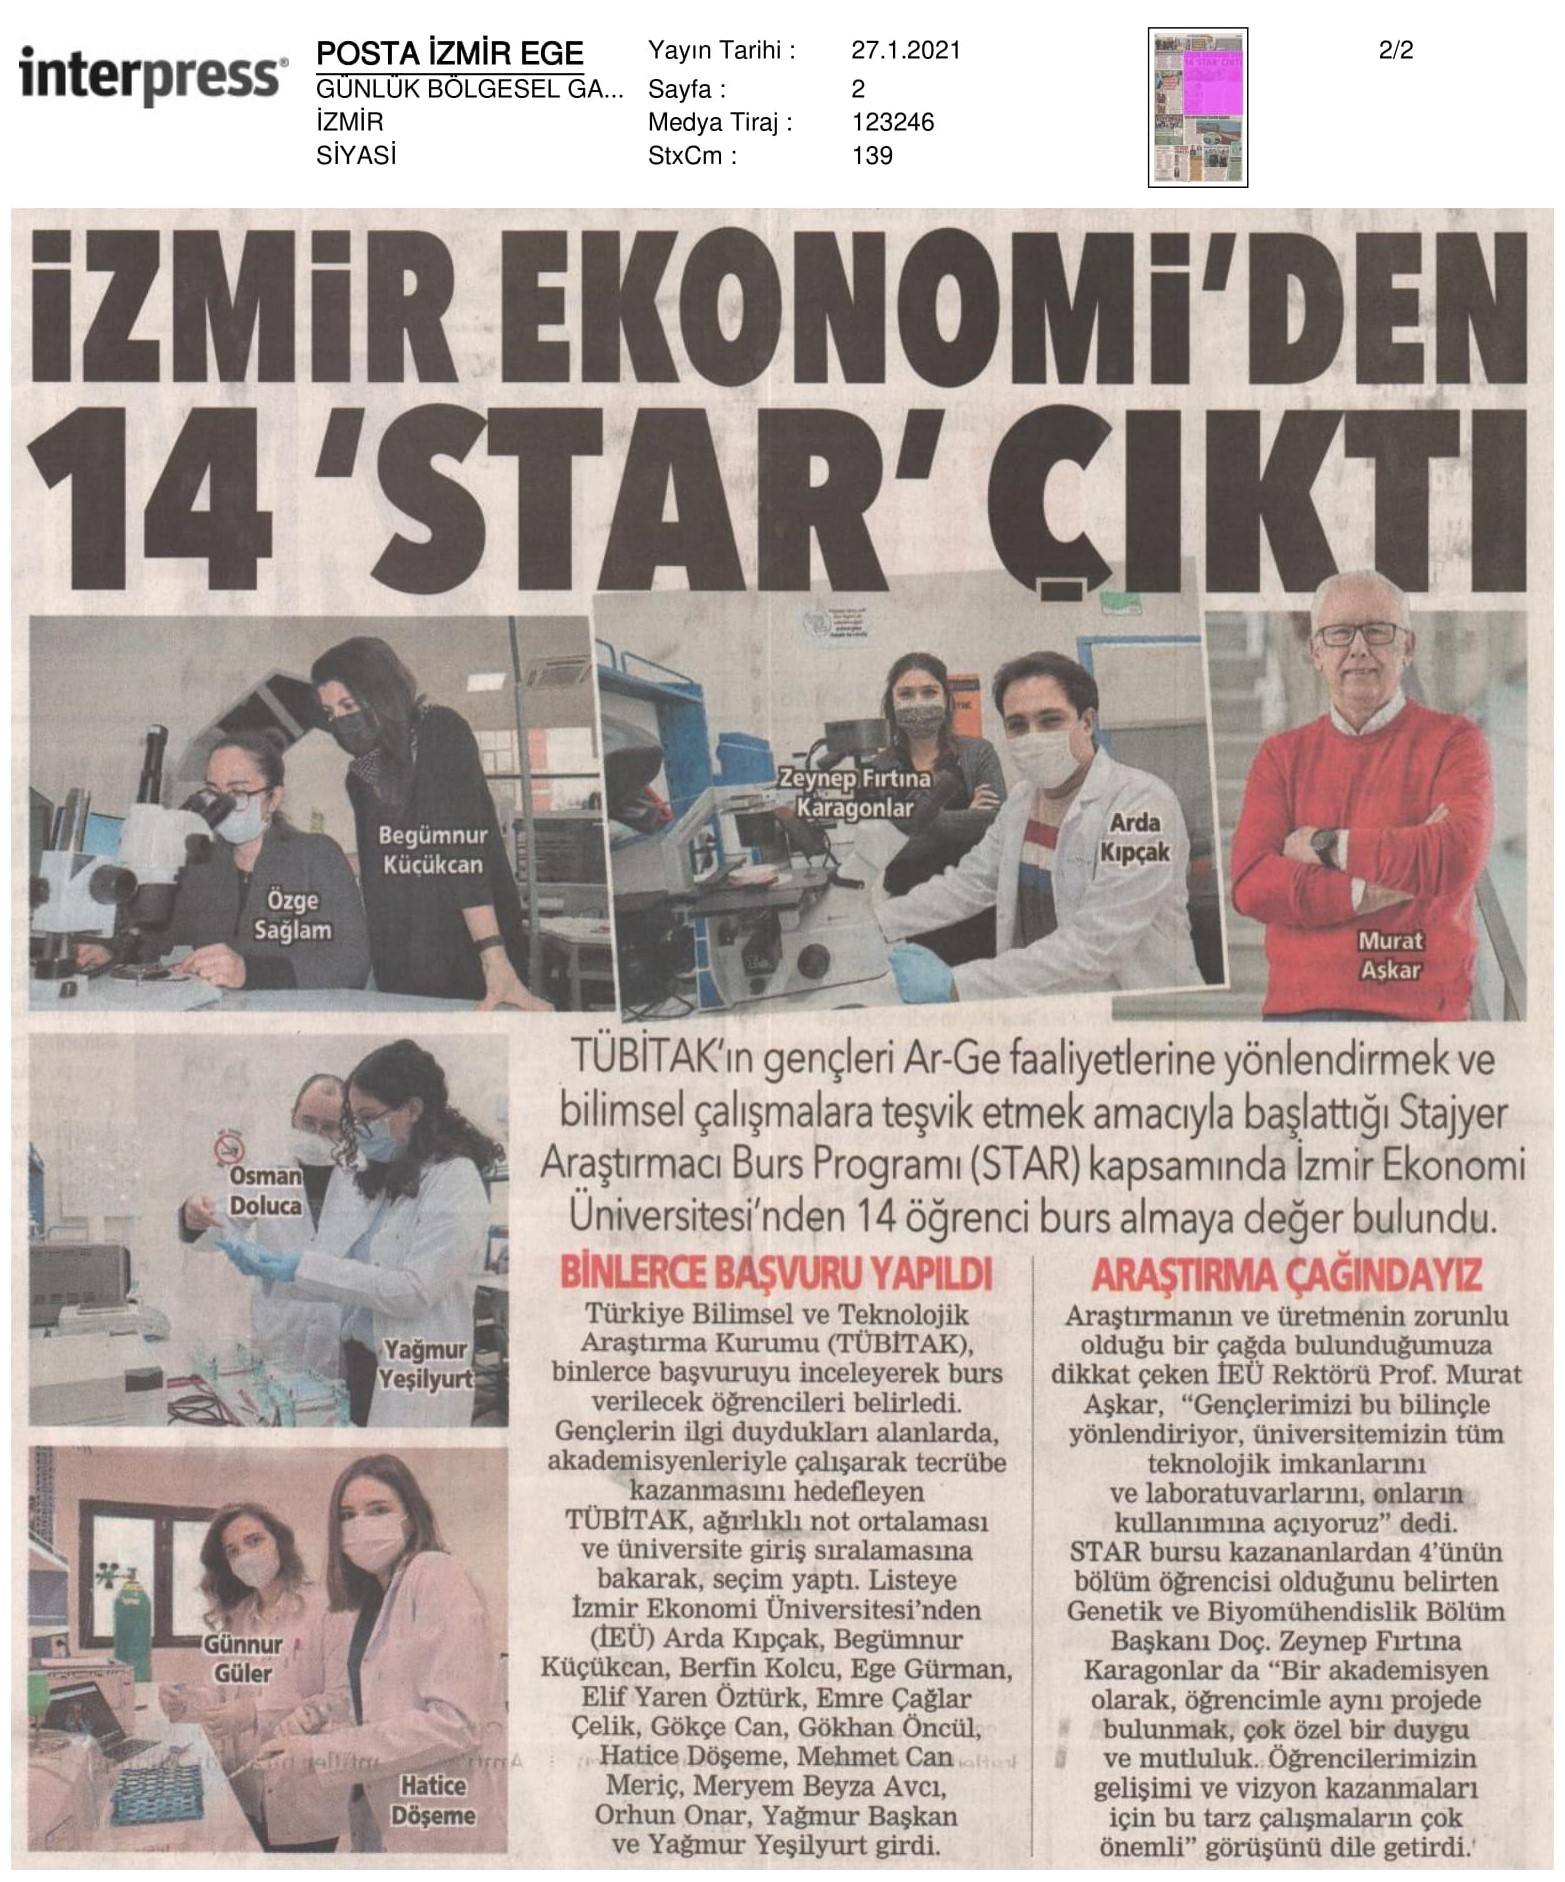 İzmir Ekonomi’nin ‘Star’ları